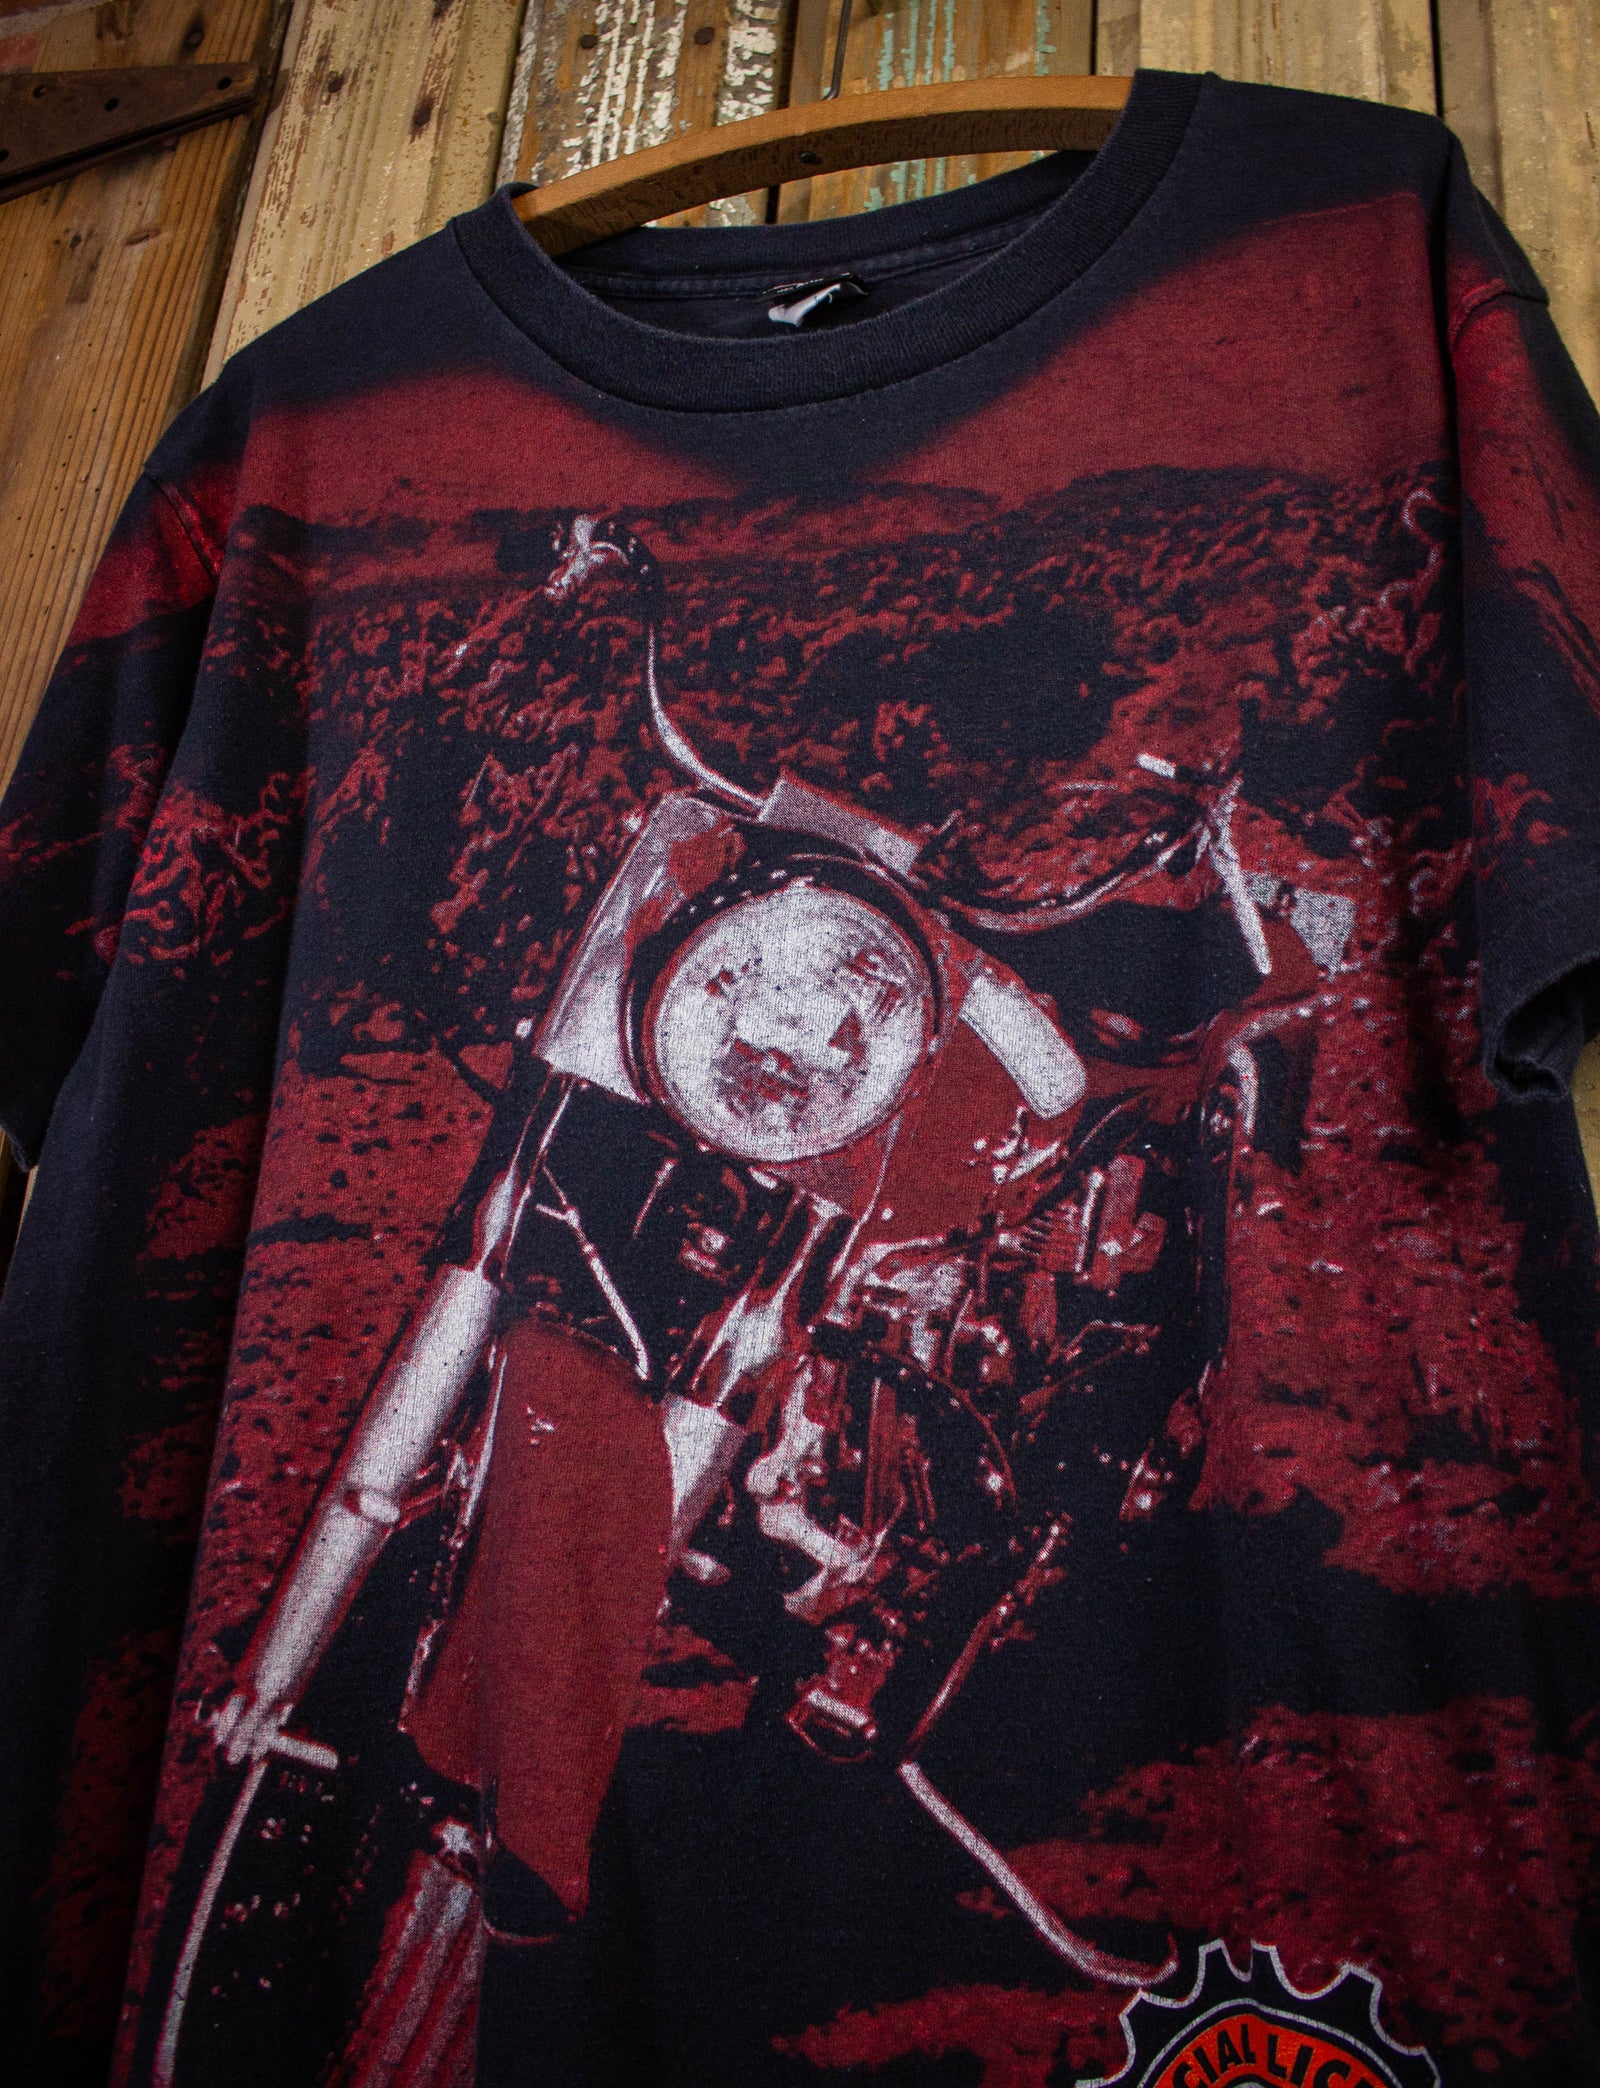 Vintage Harley Davidson AOP Bike Image Graphic T Shirt 1996 Black